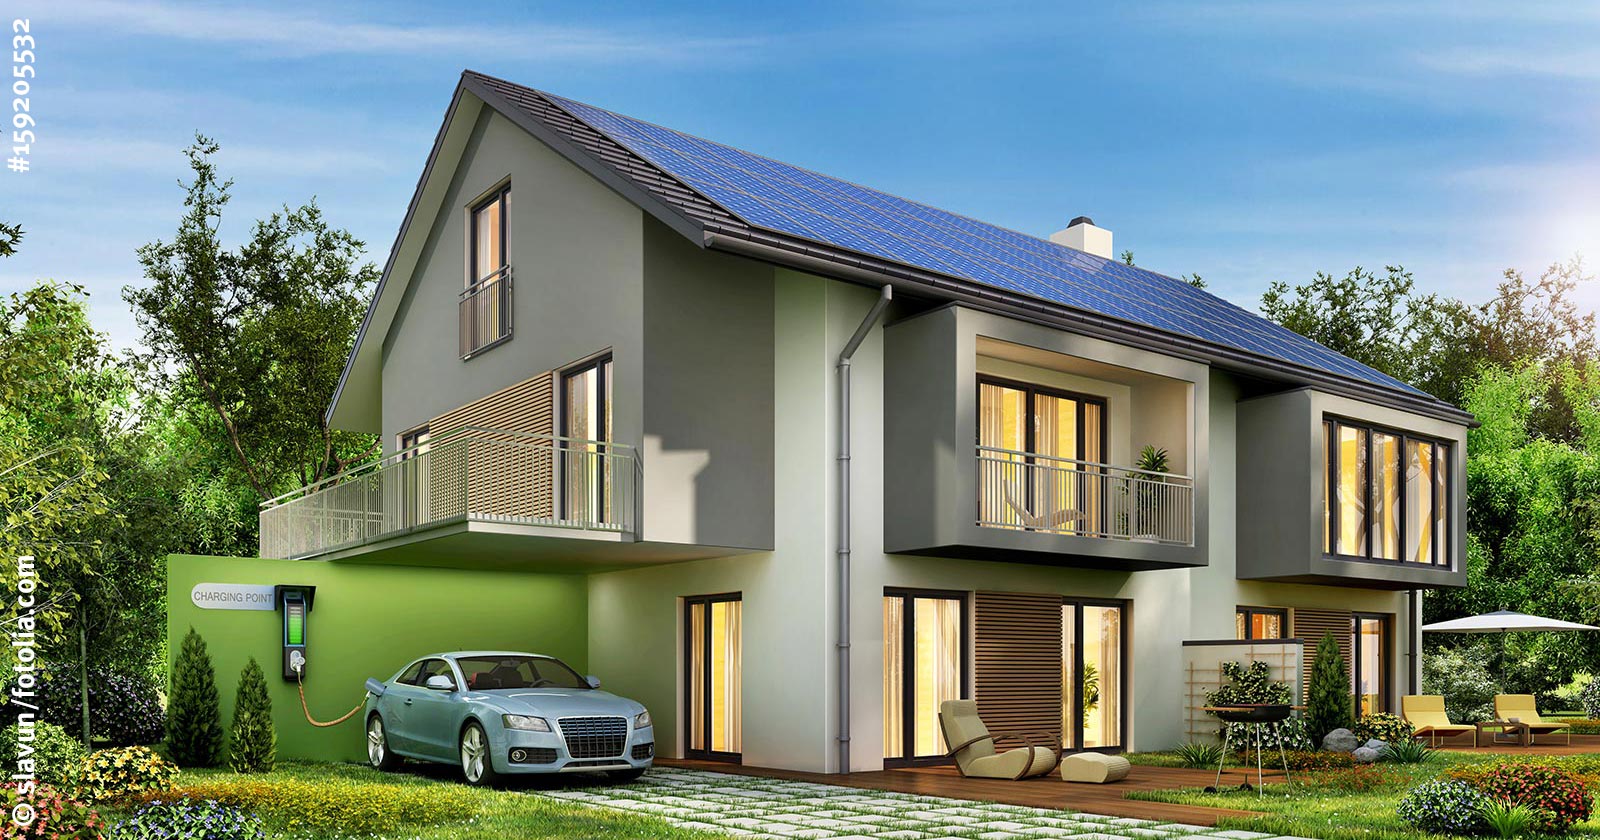 Haus mit Photovoltaik und Wallbox für das eigene Auto laden